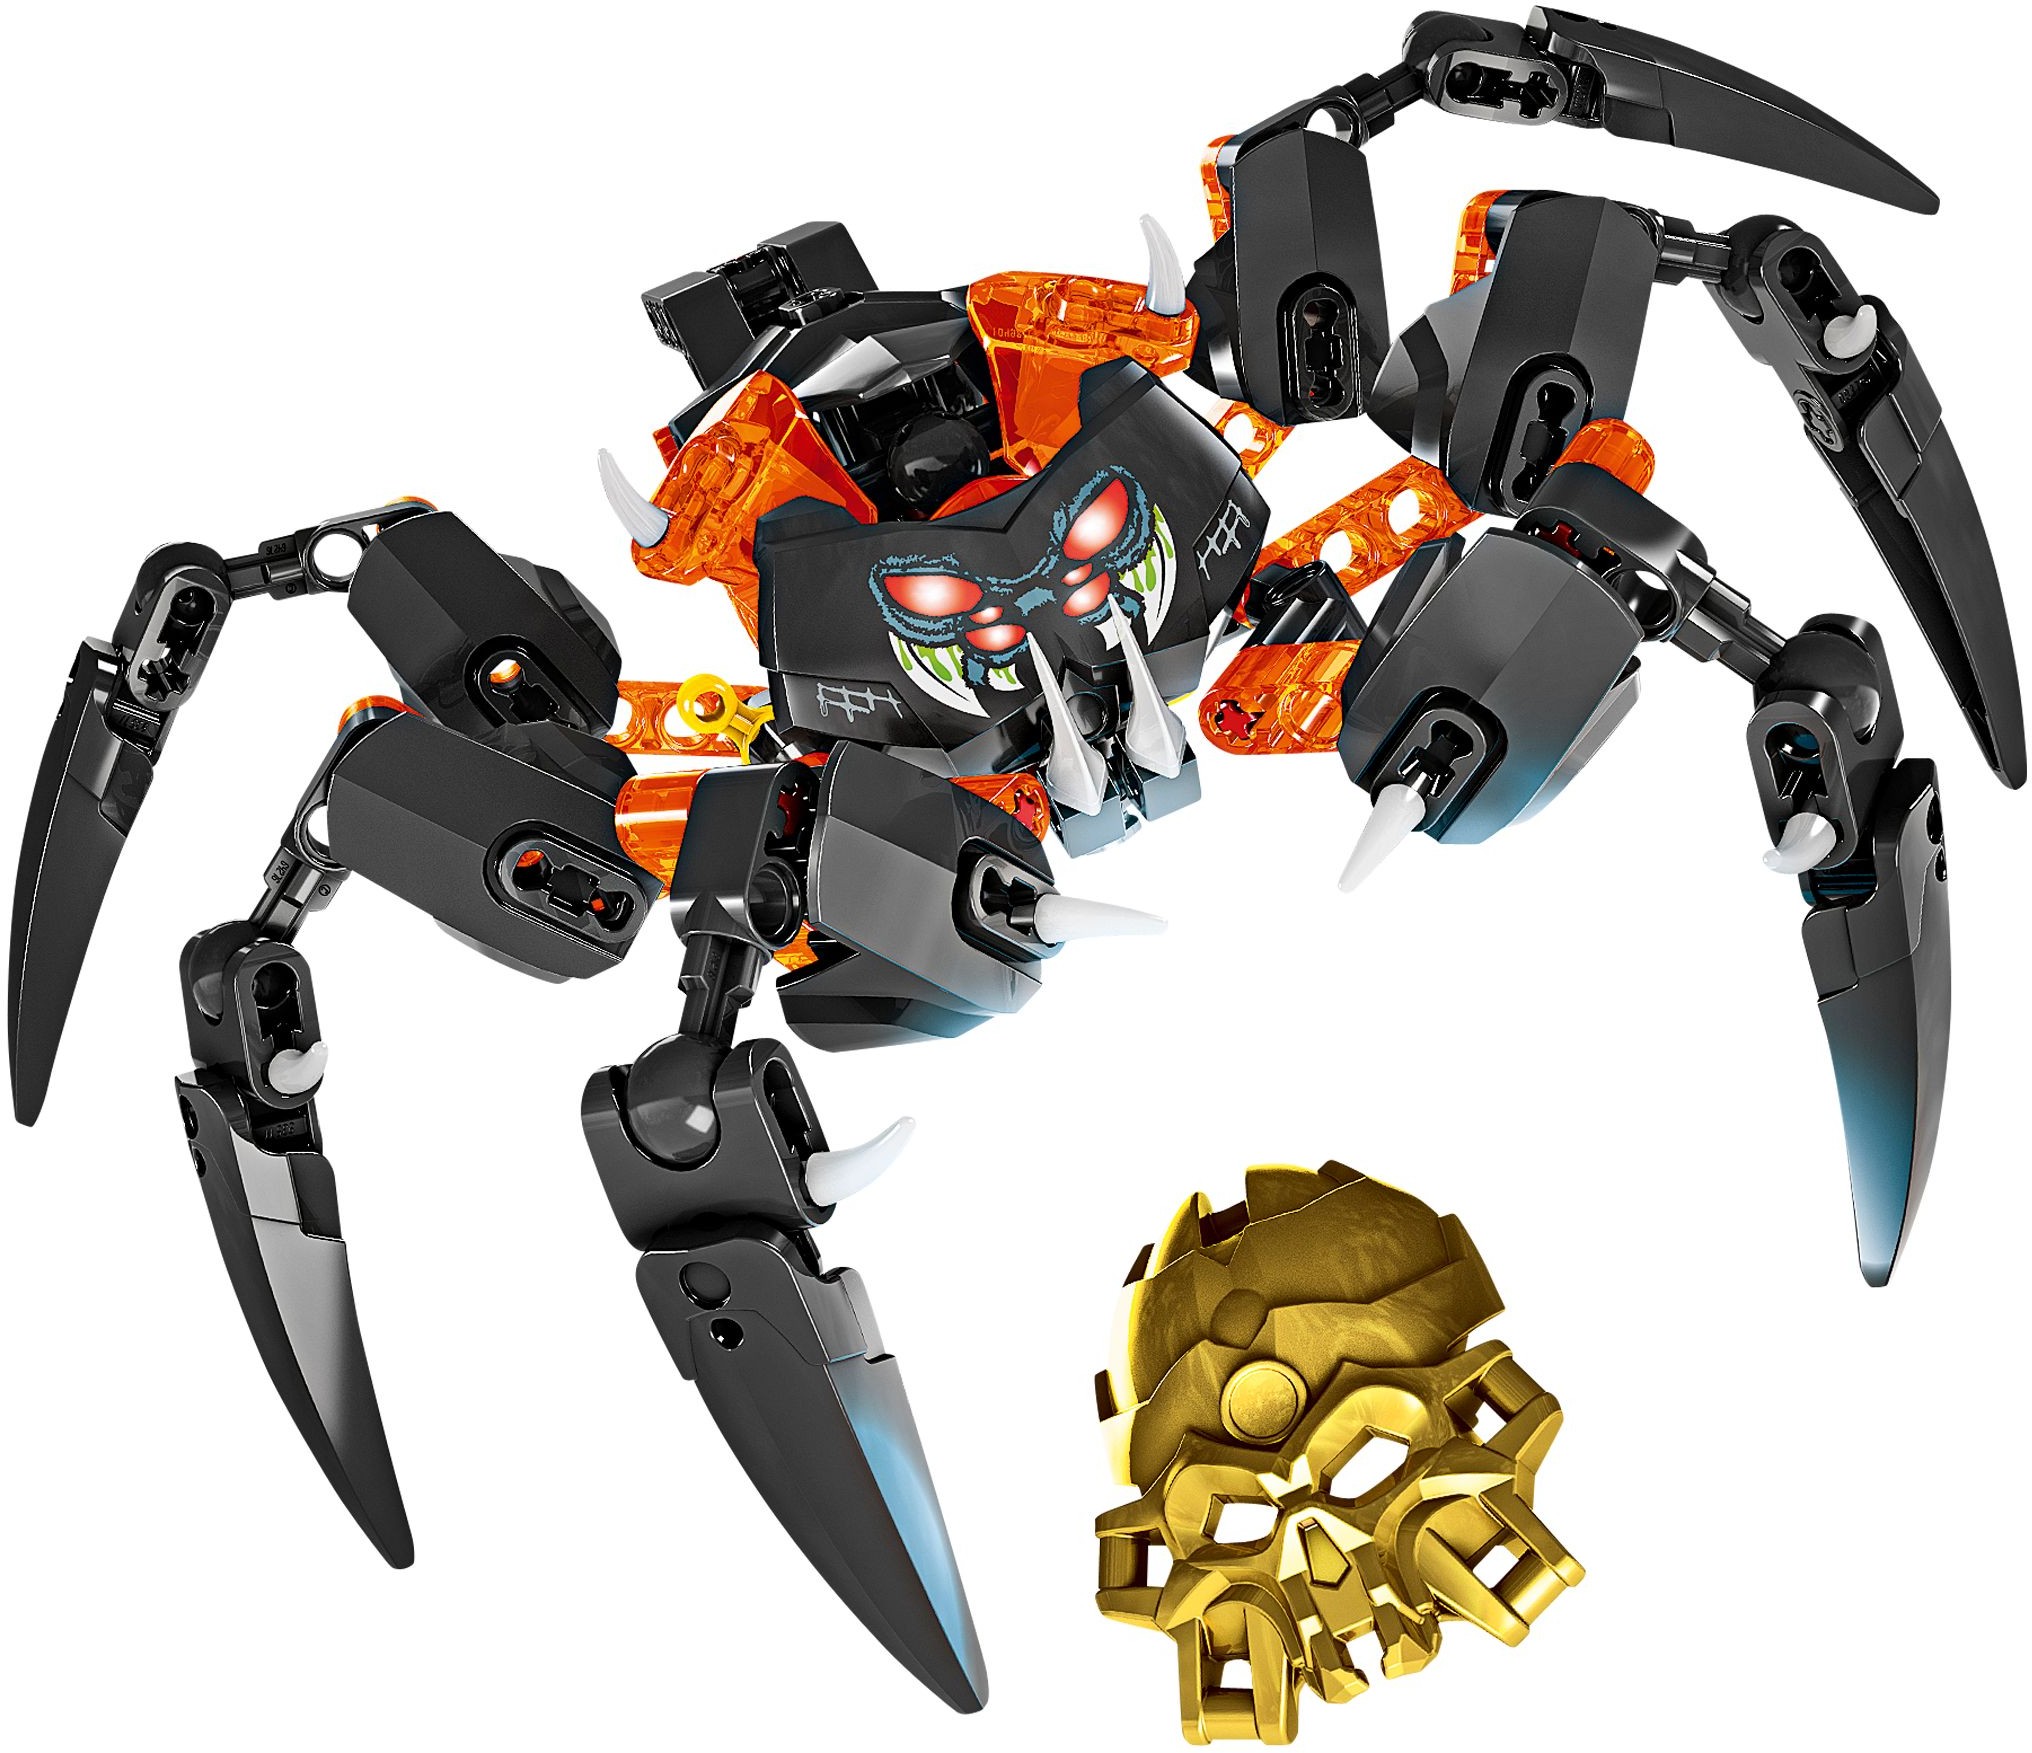 Lego Bionicle Regele paianjenilor cu craniu 8-14 ani (70790)